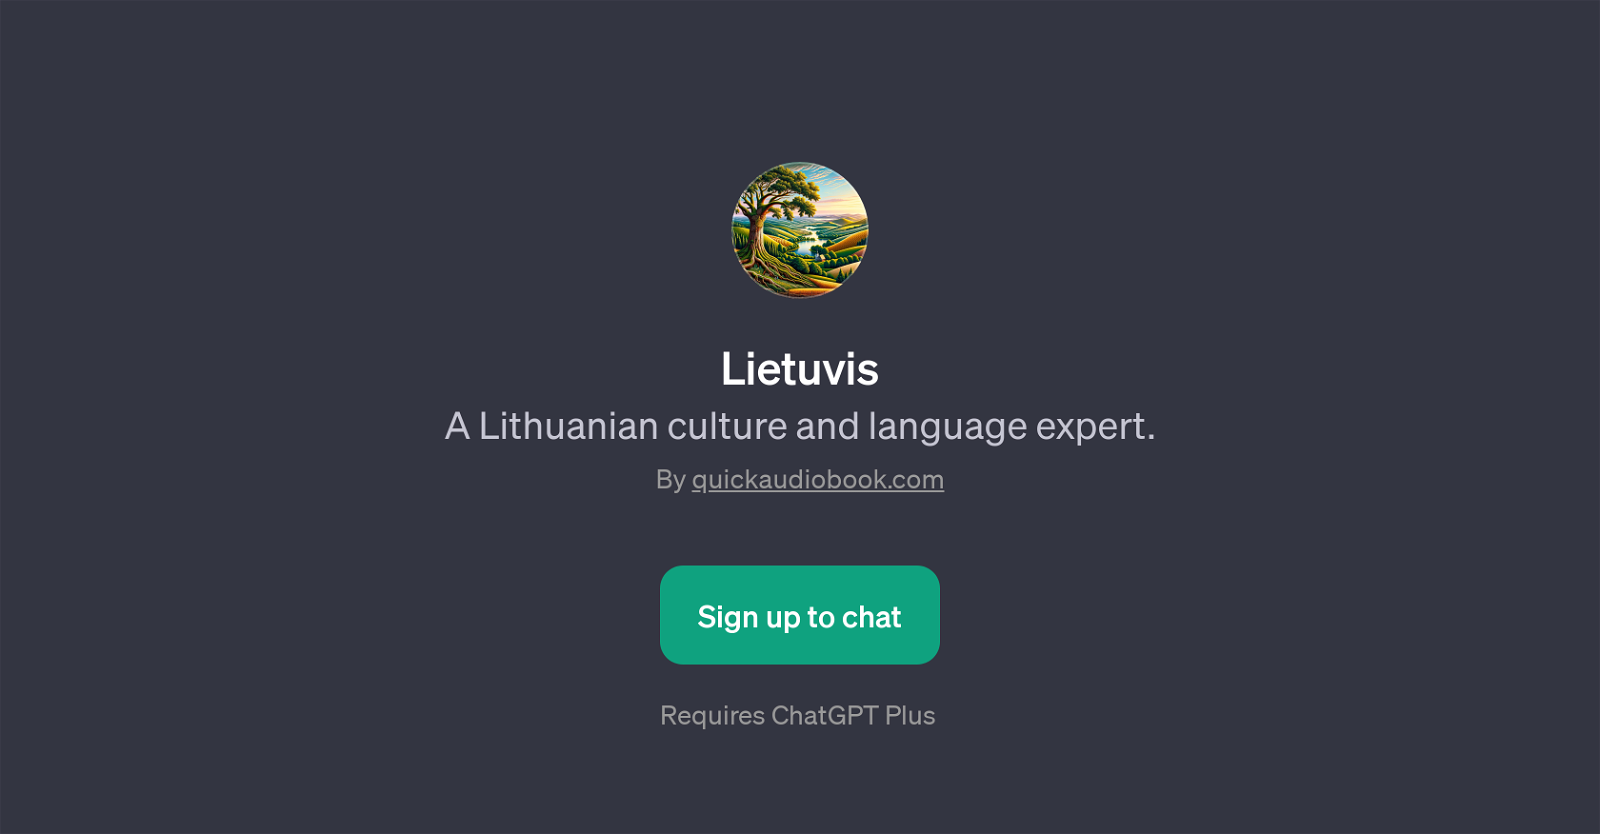 Lietuvis website